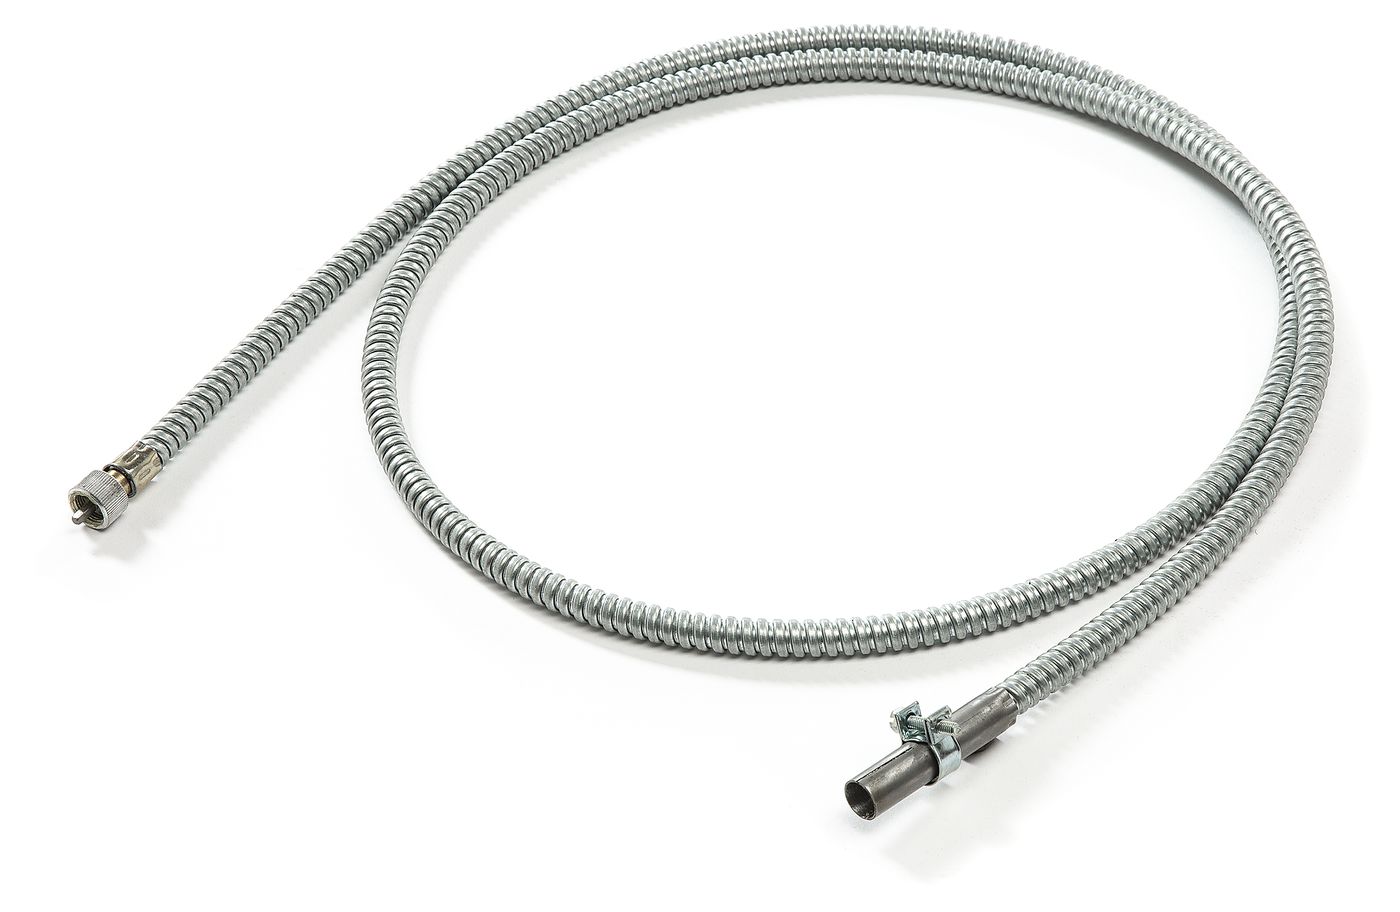 Drehzahlmesserwelle
Tachometer cable
Cable de compte tours
Wałe